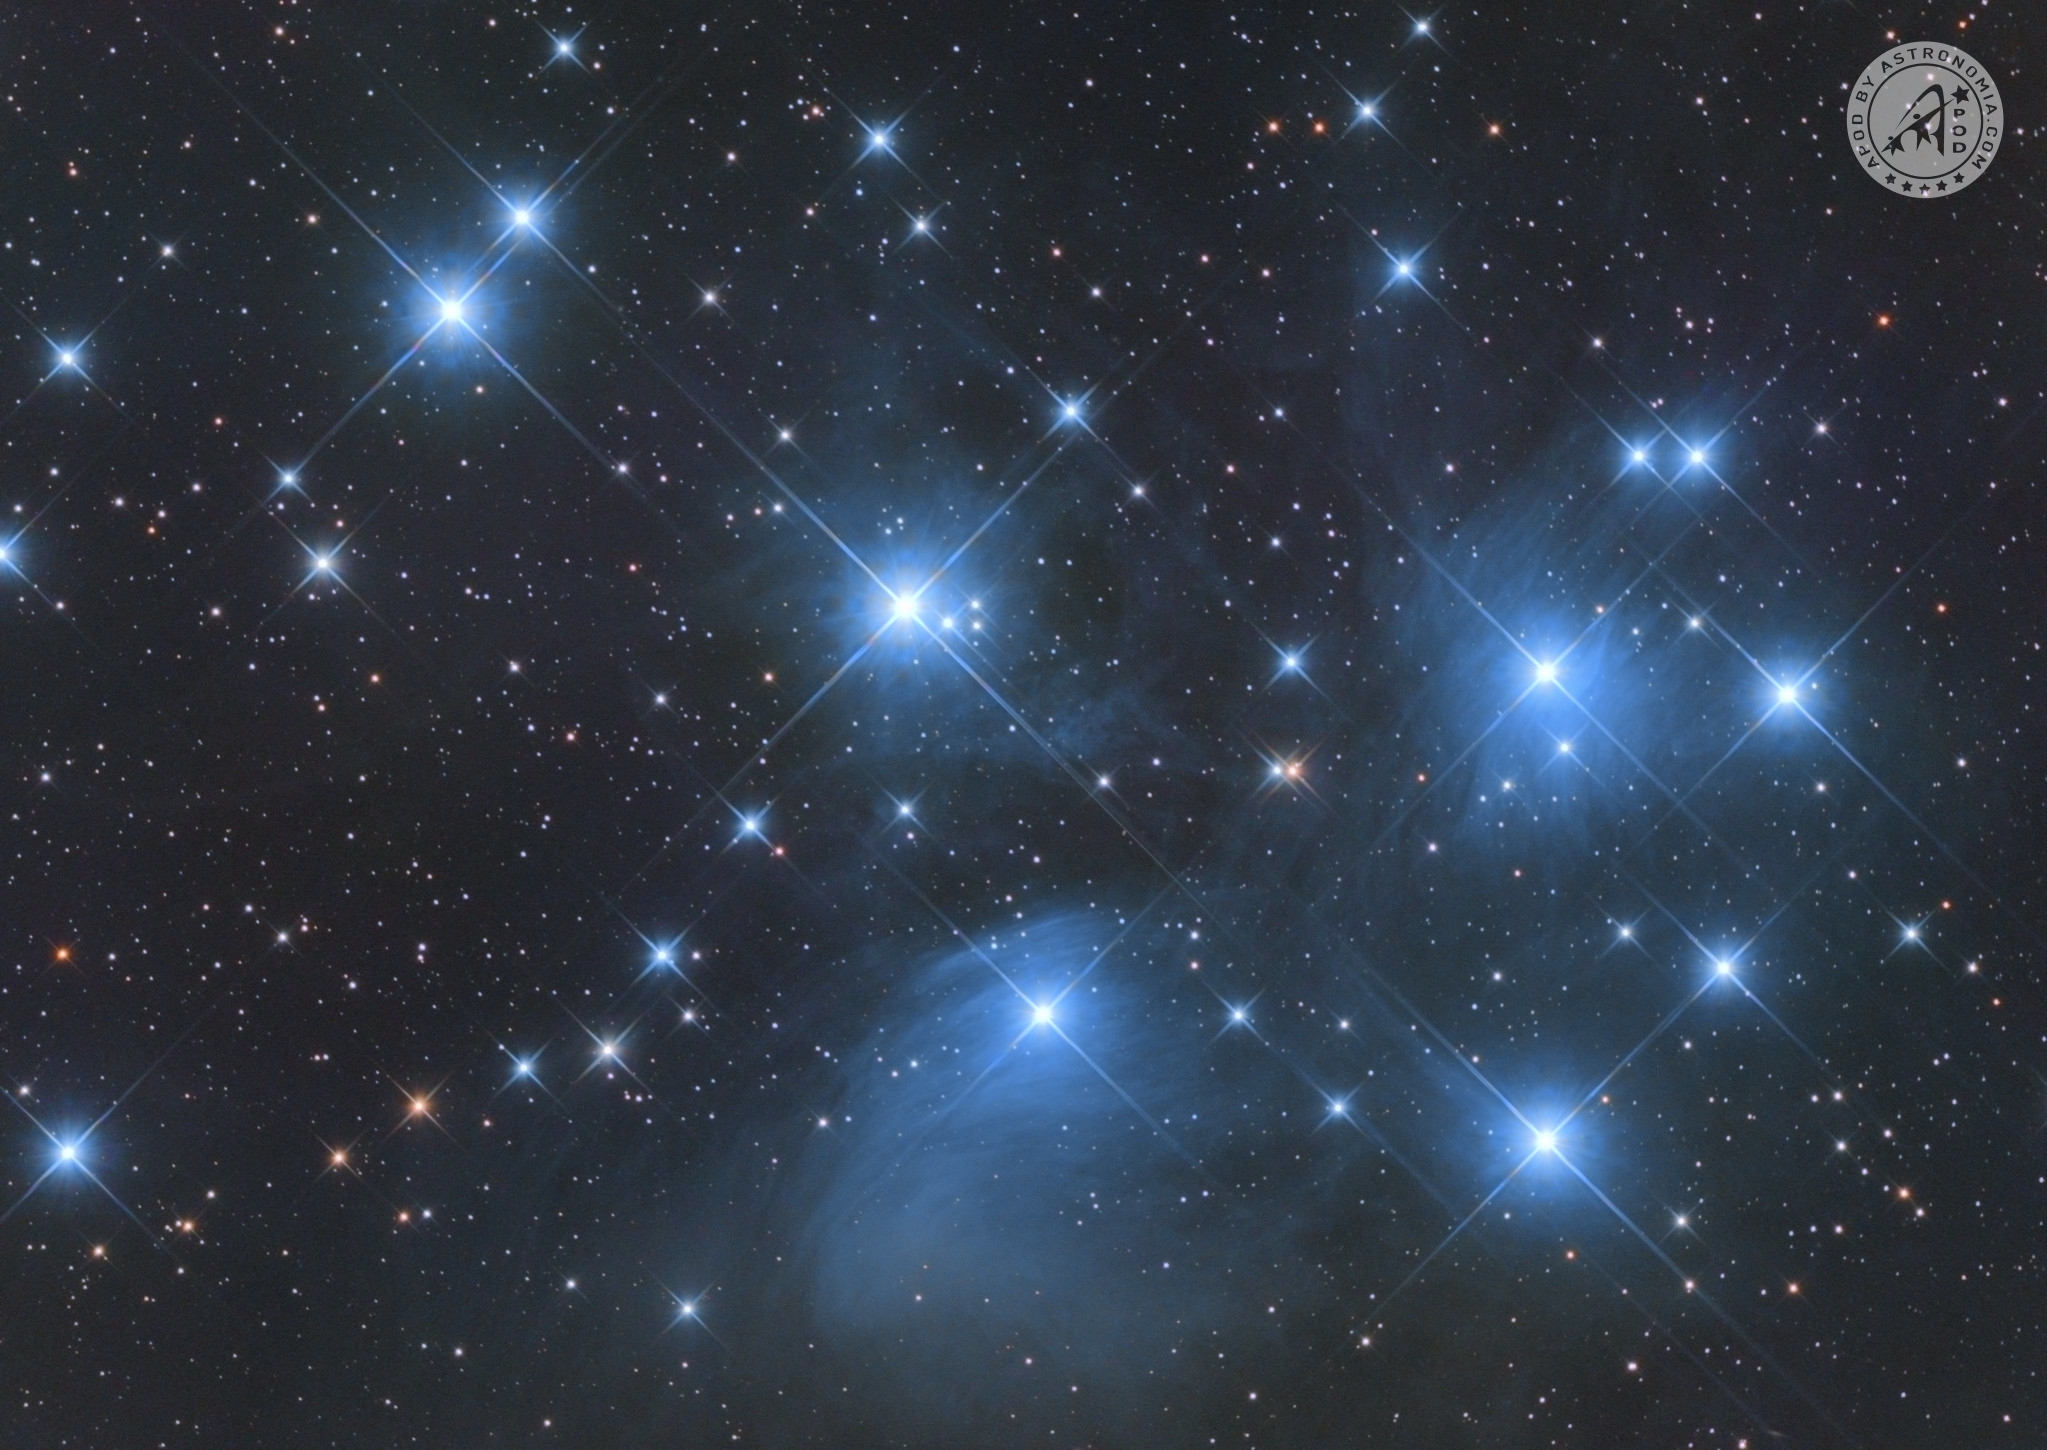 Le Pleiadi – M45